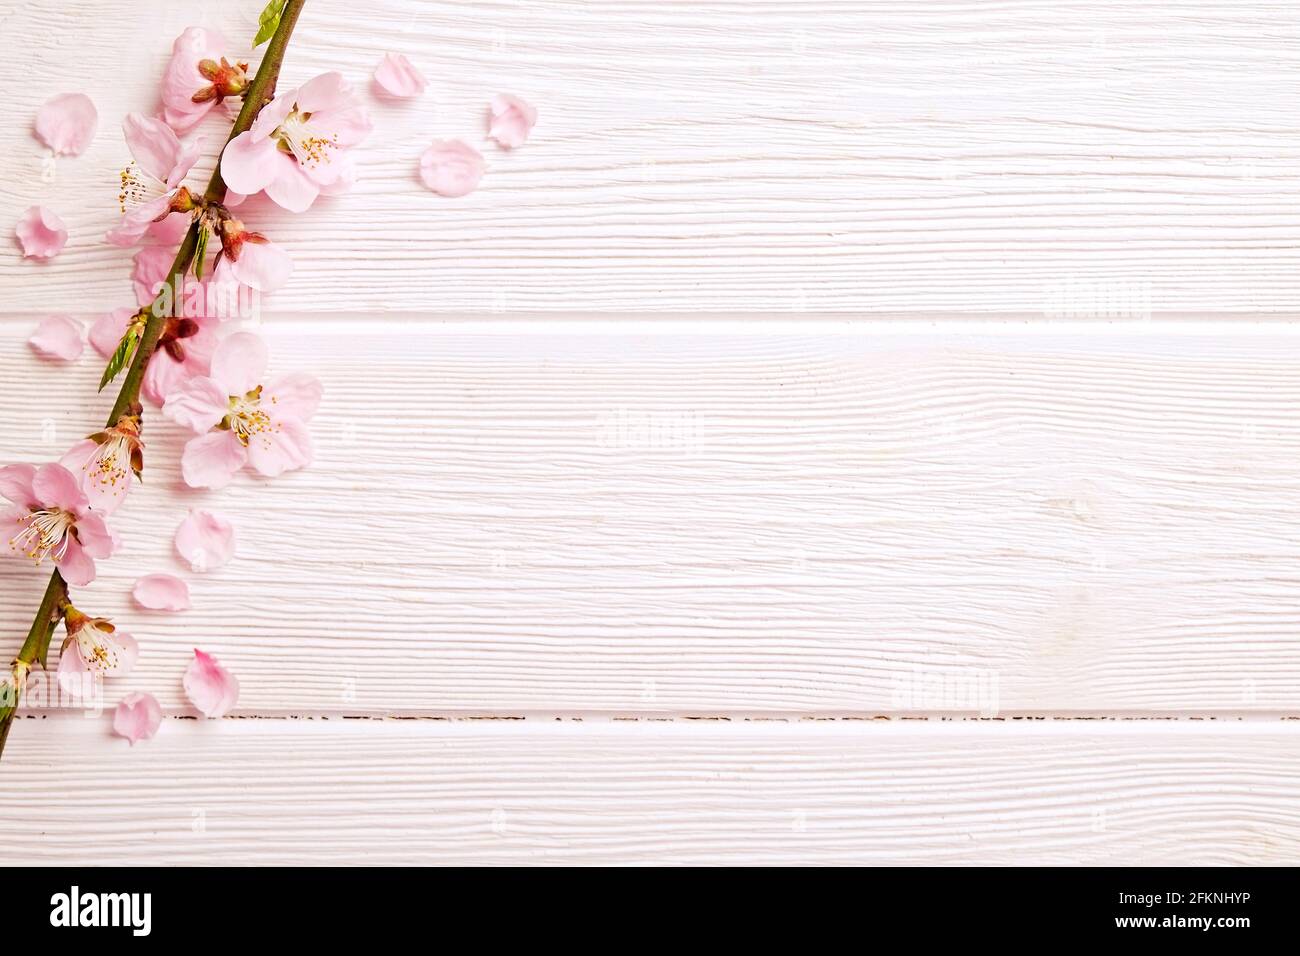 Una sola primavera de flores con una gran cantidad de flores rosas sobre  fondo blanco de madera. Composición rústica, muchas flores de árboles  primaverales en madera vintage te Fotografía de stock -